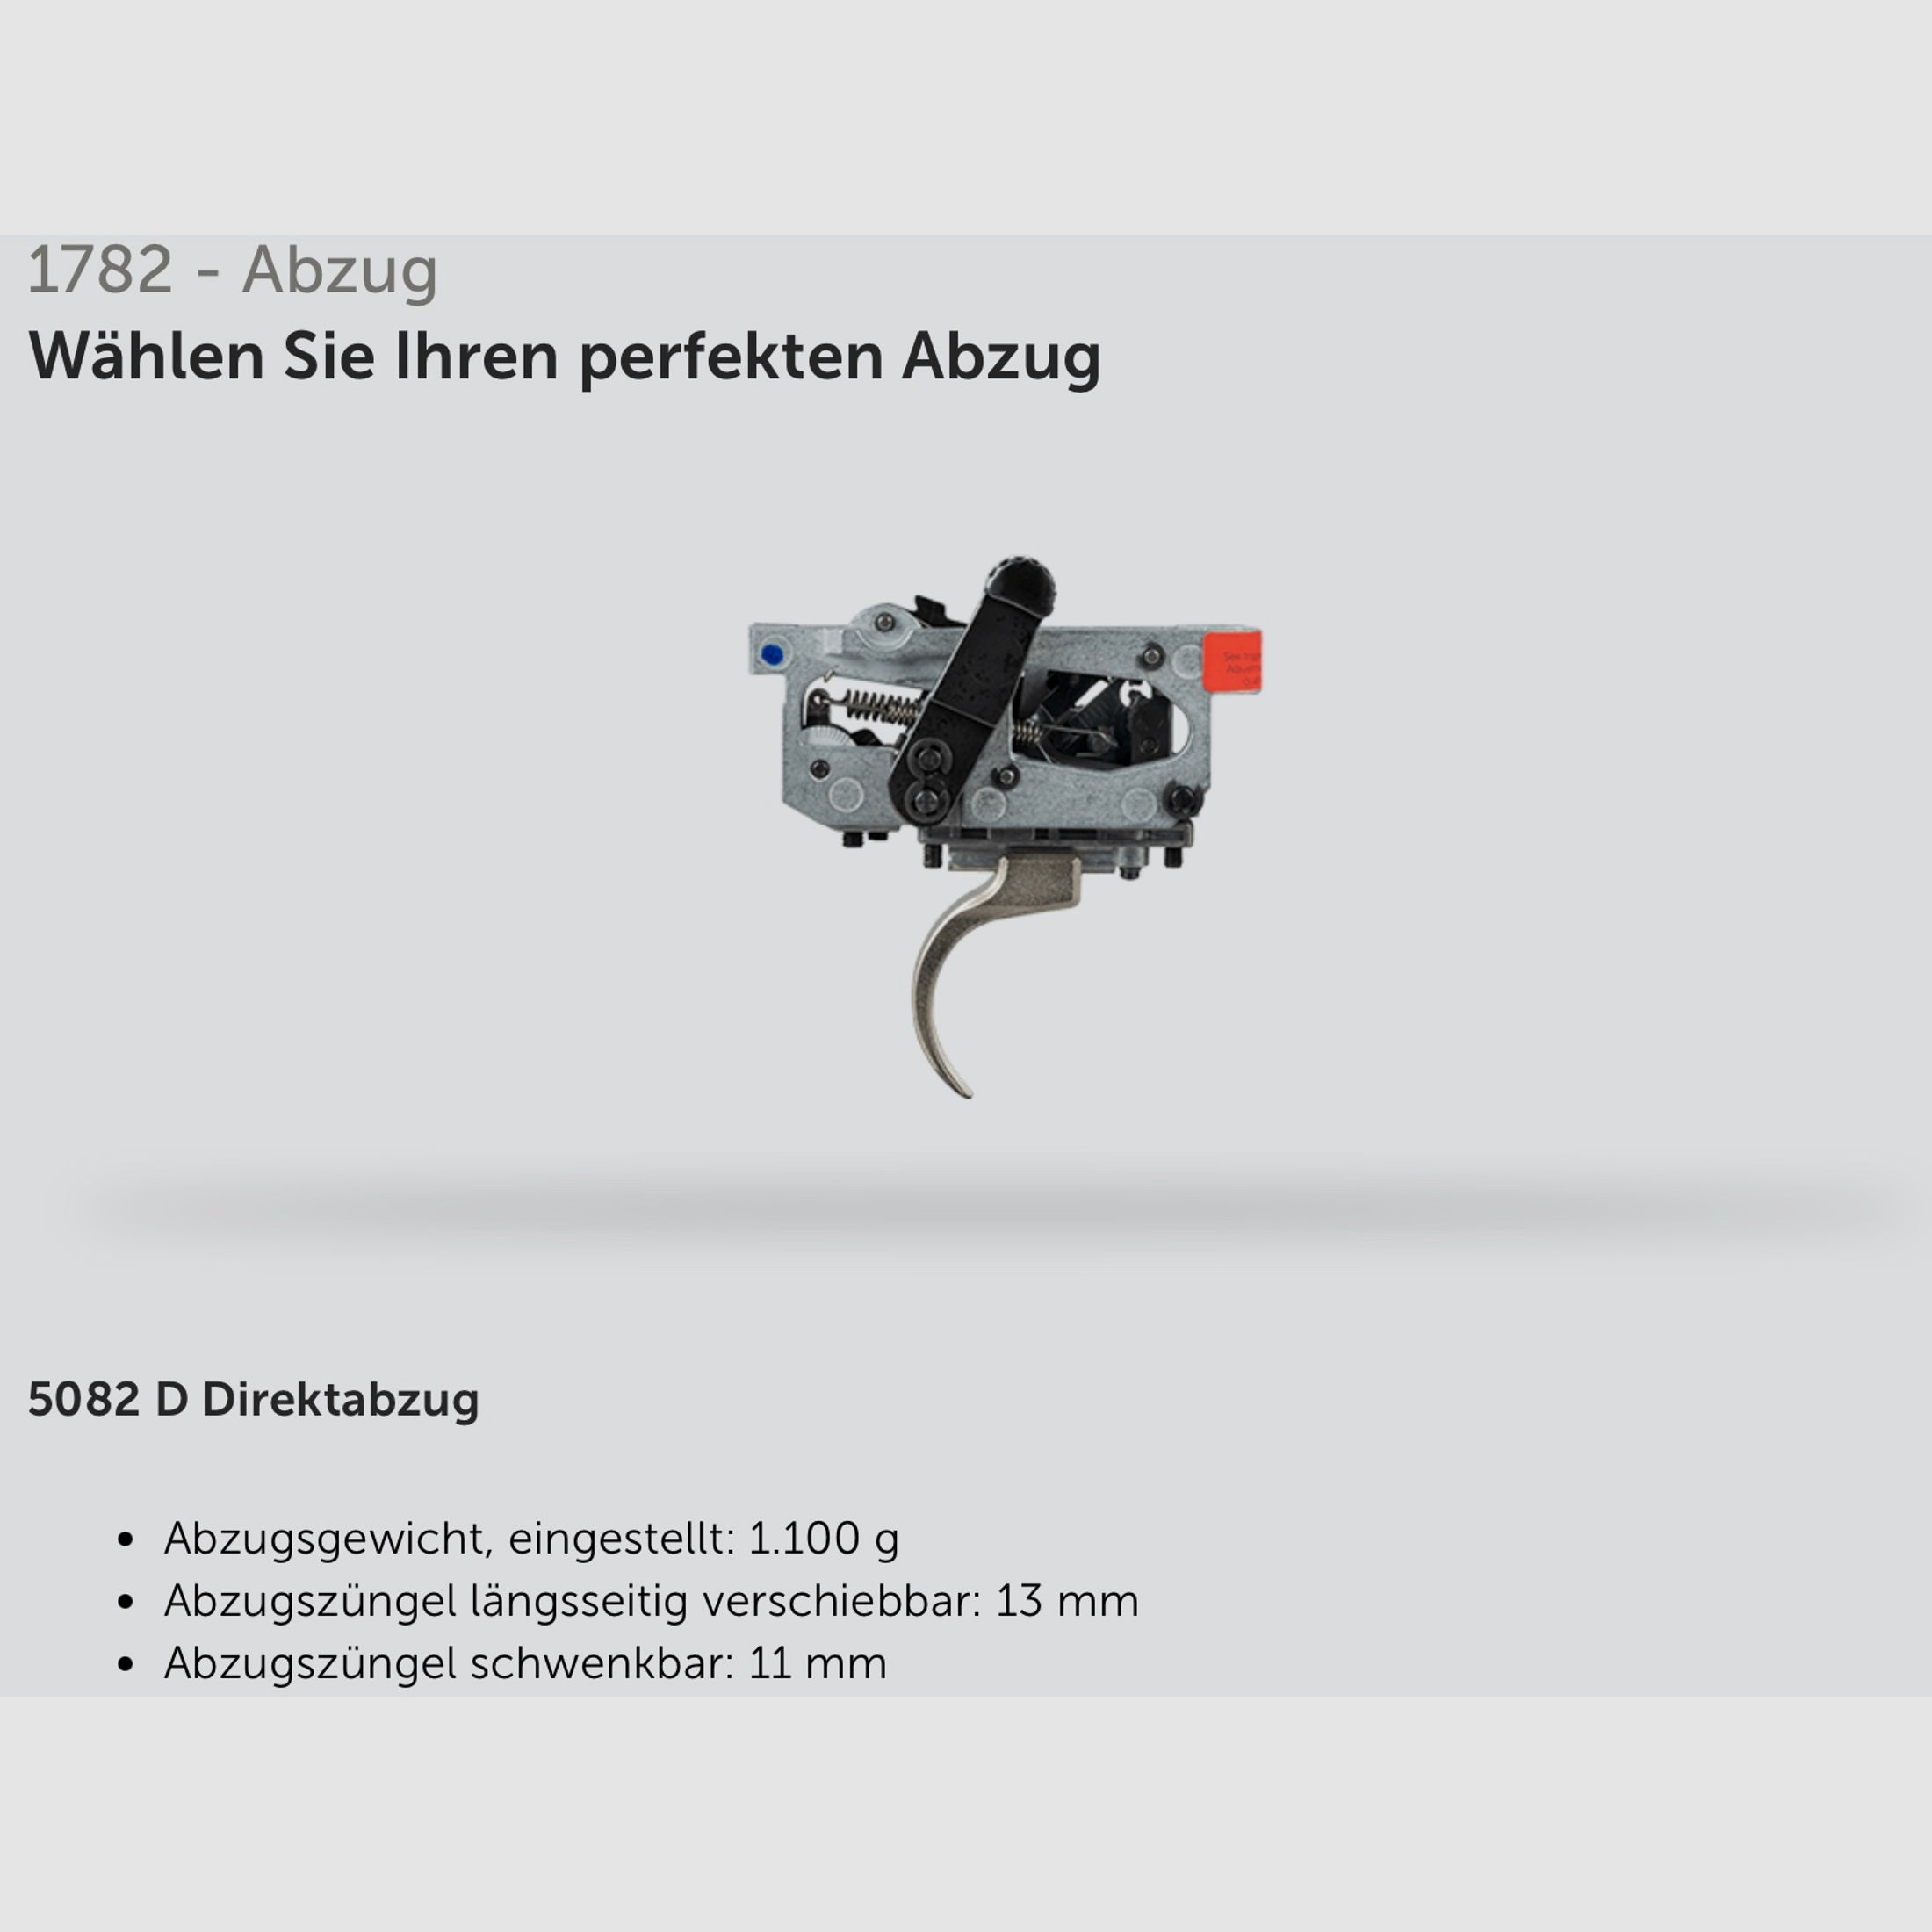 J.G. Aschütz 1782 D G-15x1 Classic Kaliber .243 Win. Repetierbüchse LL 580mm M15x1 Gewinde